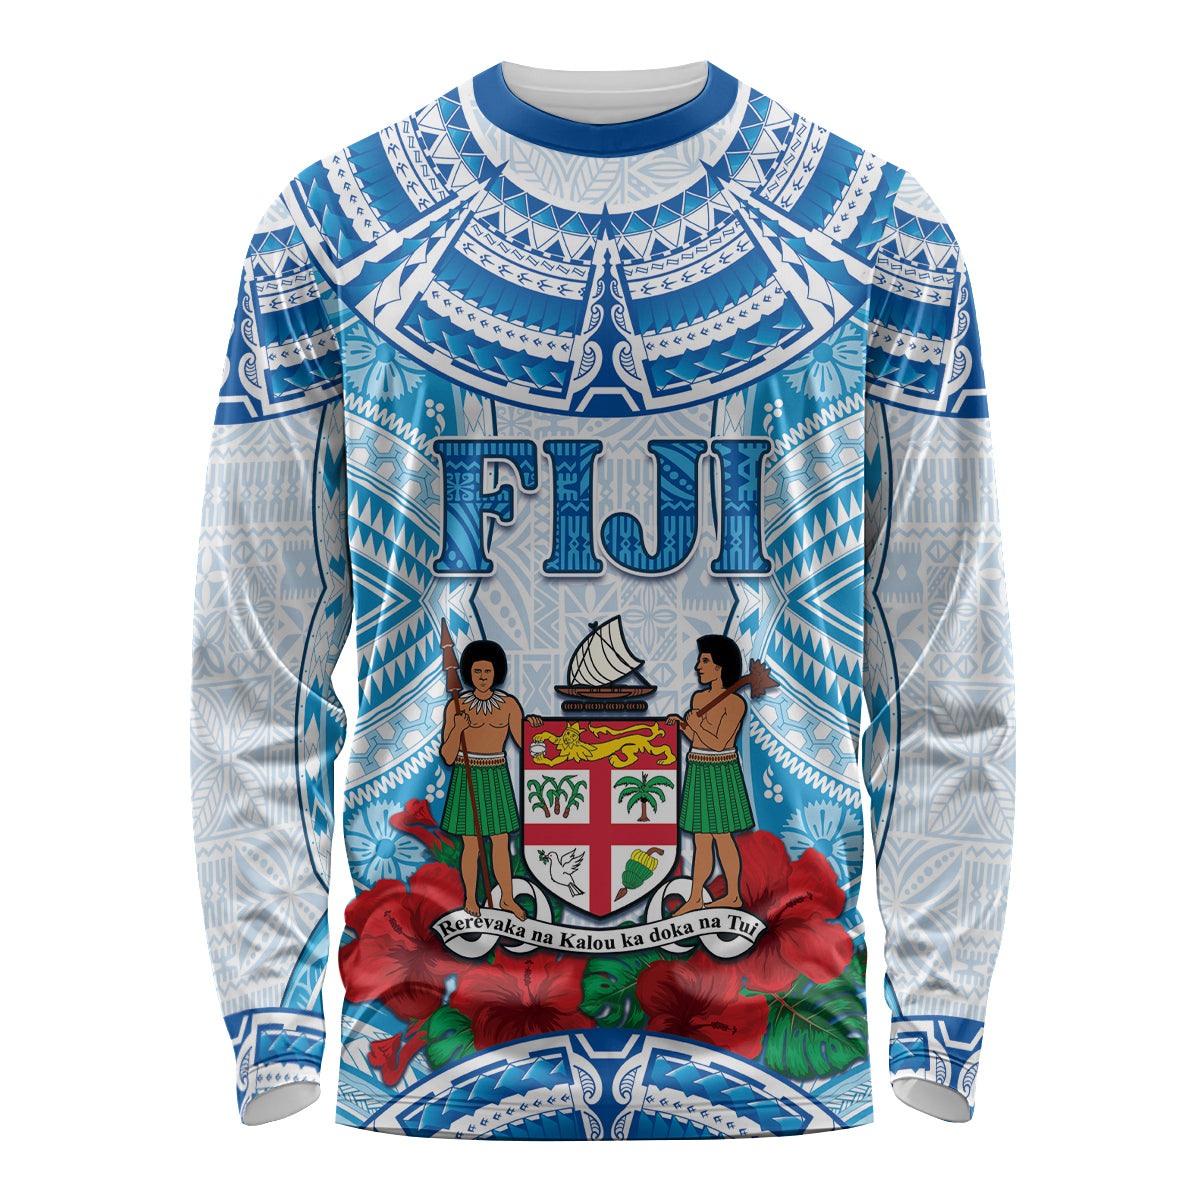 Personalised Fiji Ratu Sir Lala Sukuna Day Long Sleeve Shirt Hibiscus Tapa Pattern